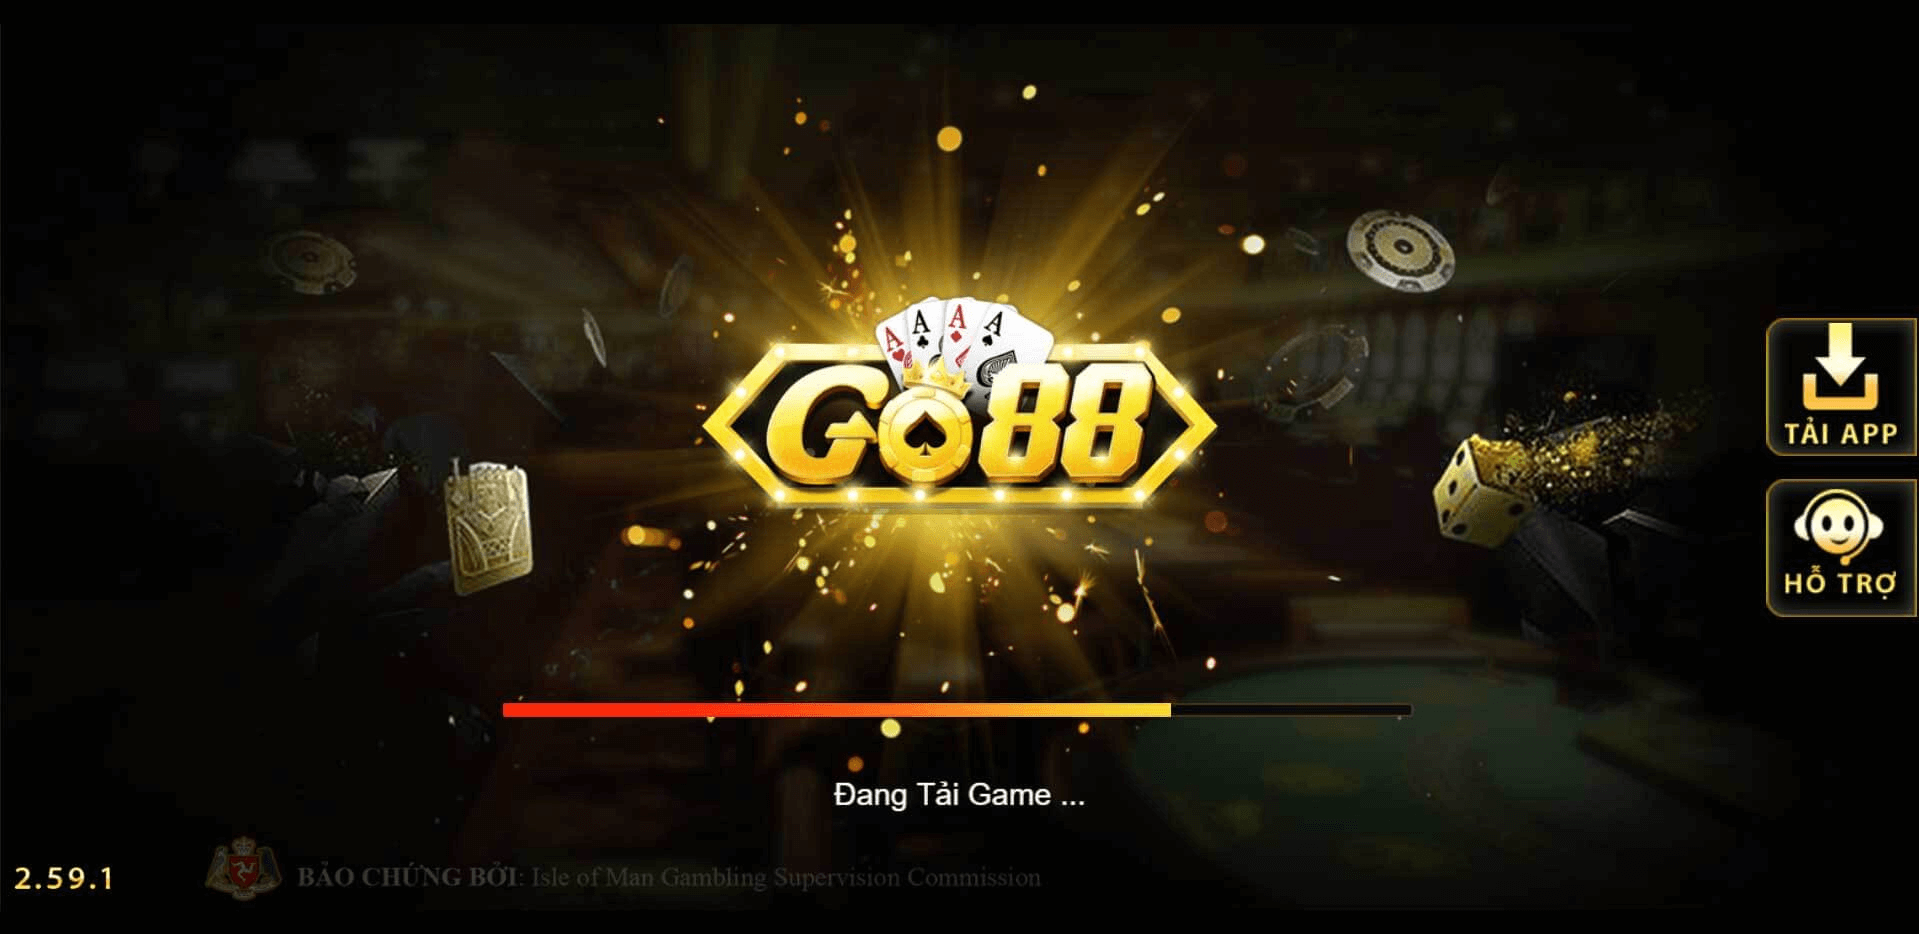 GO88 - Khám phá cổng game đổi thưởng đẳng cấp hoàng gia